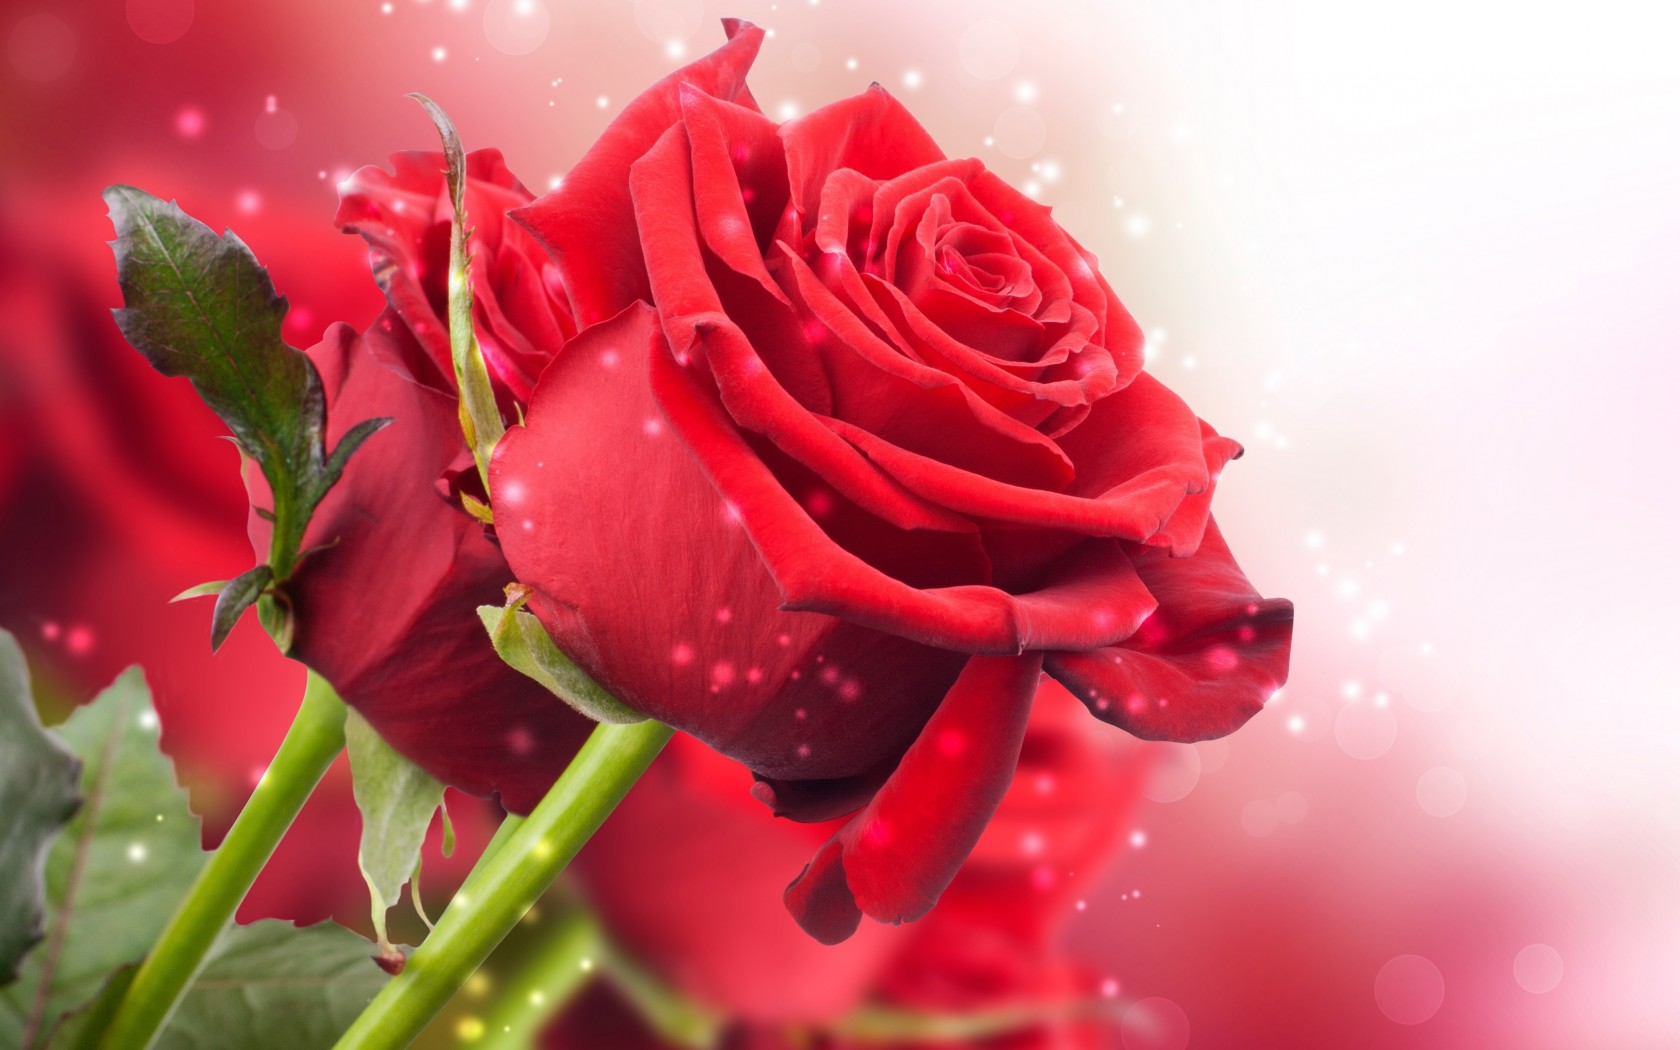 Ý nghĩa hoa Hồng Đỏ  Những hình ảnh hoa Hồng Đỏ đẹp nhất  Trường THPT  Phạm Hồng Thái